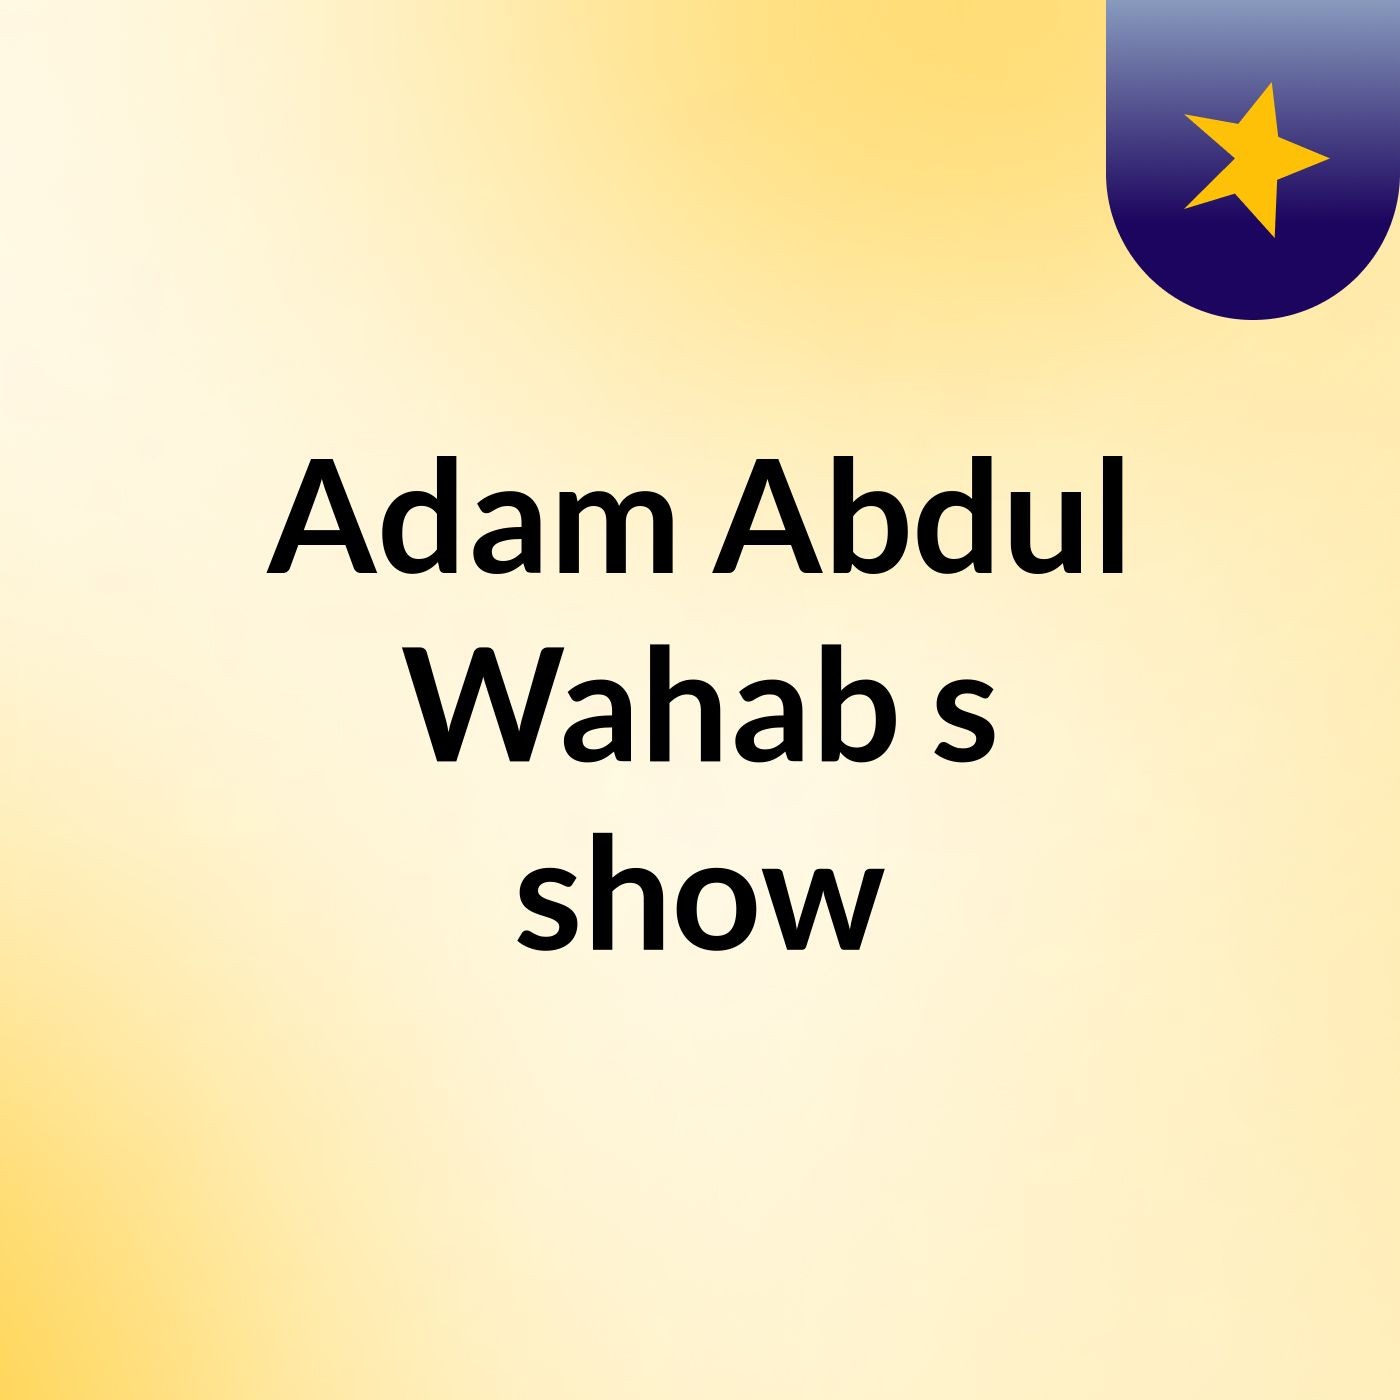 Episode 2 - Adam Abdul Wahab's show